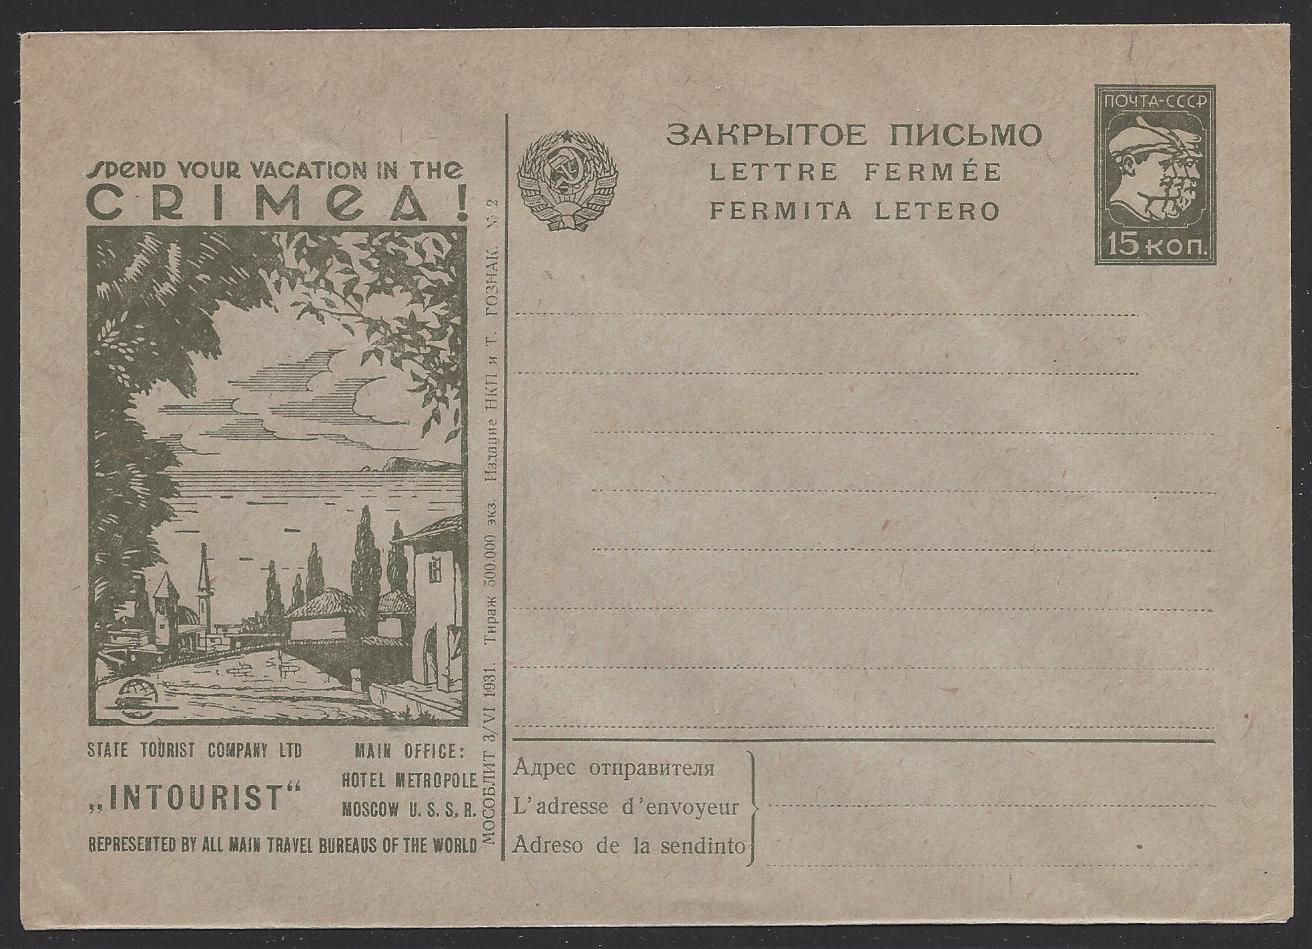 Postal Stationery - Soviet Union STAMPED ENVELOPES Scott 9 Michel U37-II-02 